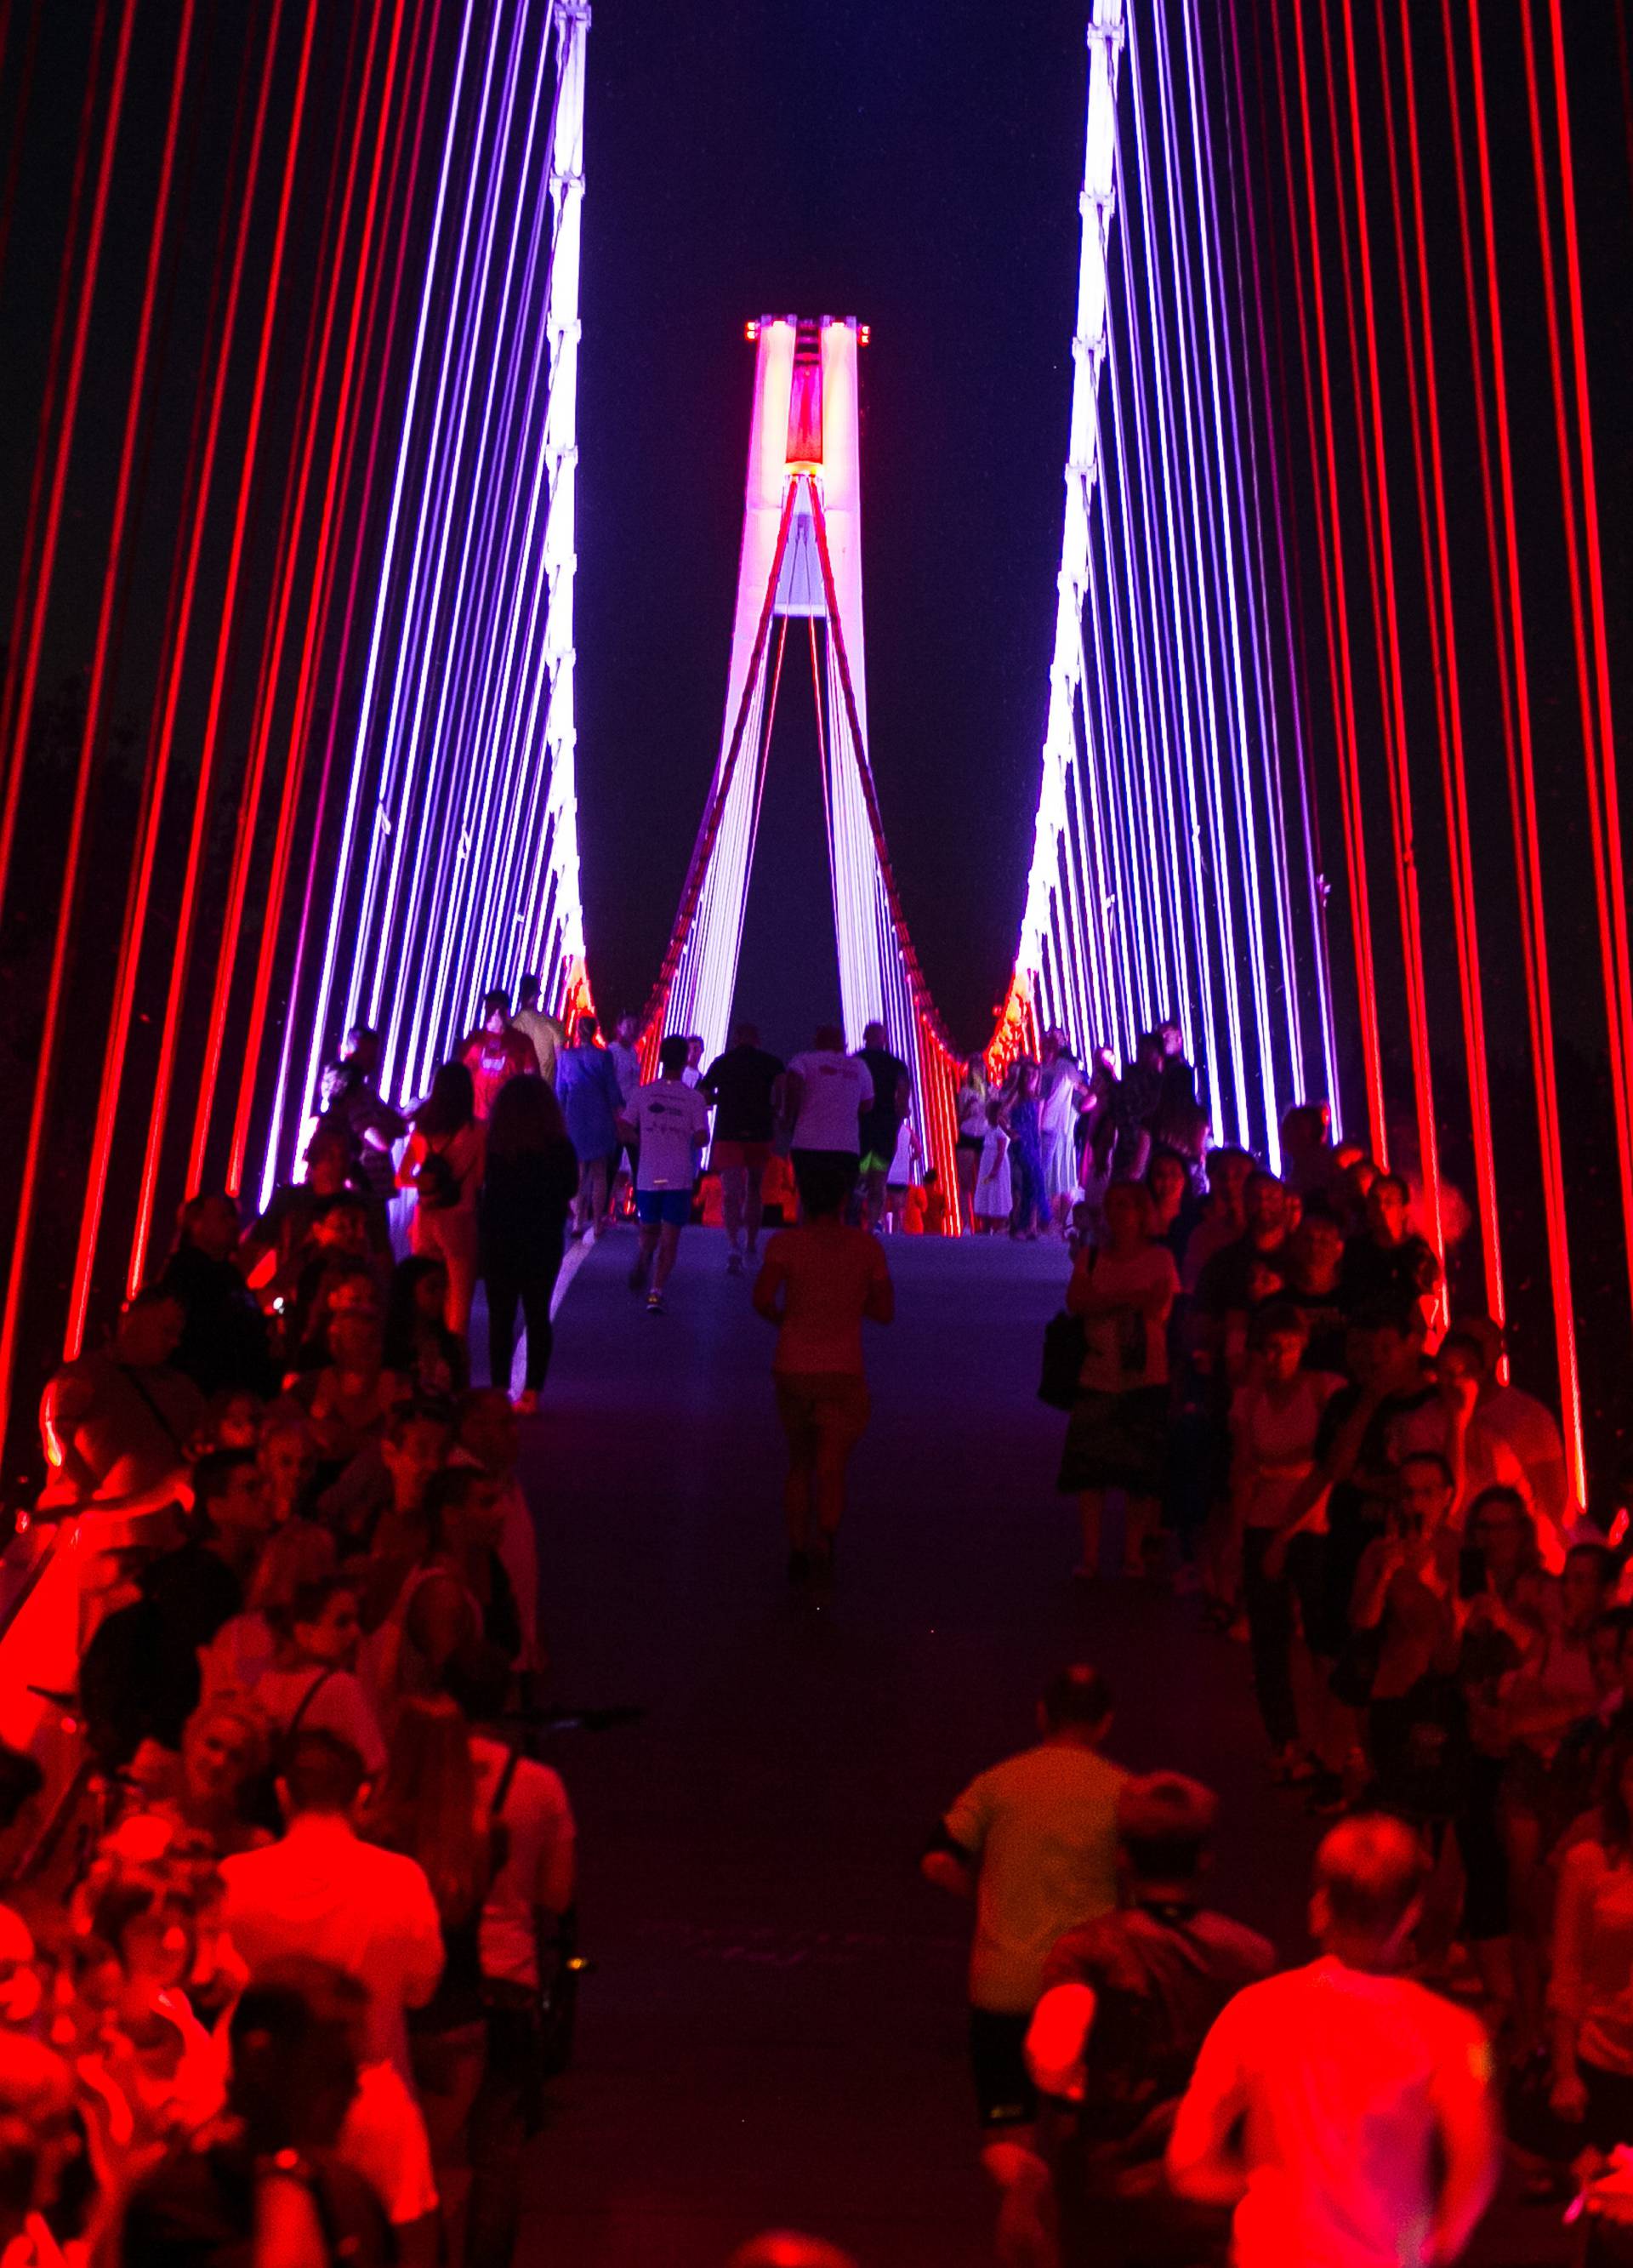 Građani skupljali čepove za osvjetljenje osječkog mosta